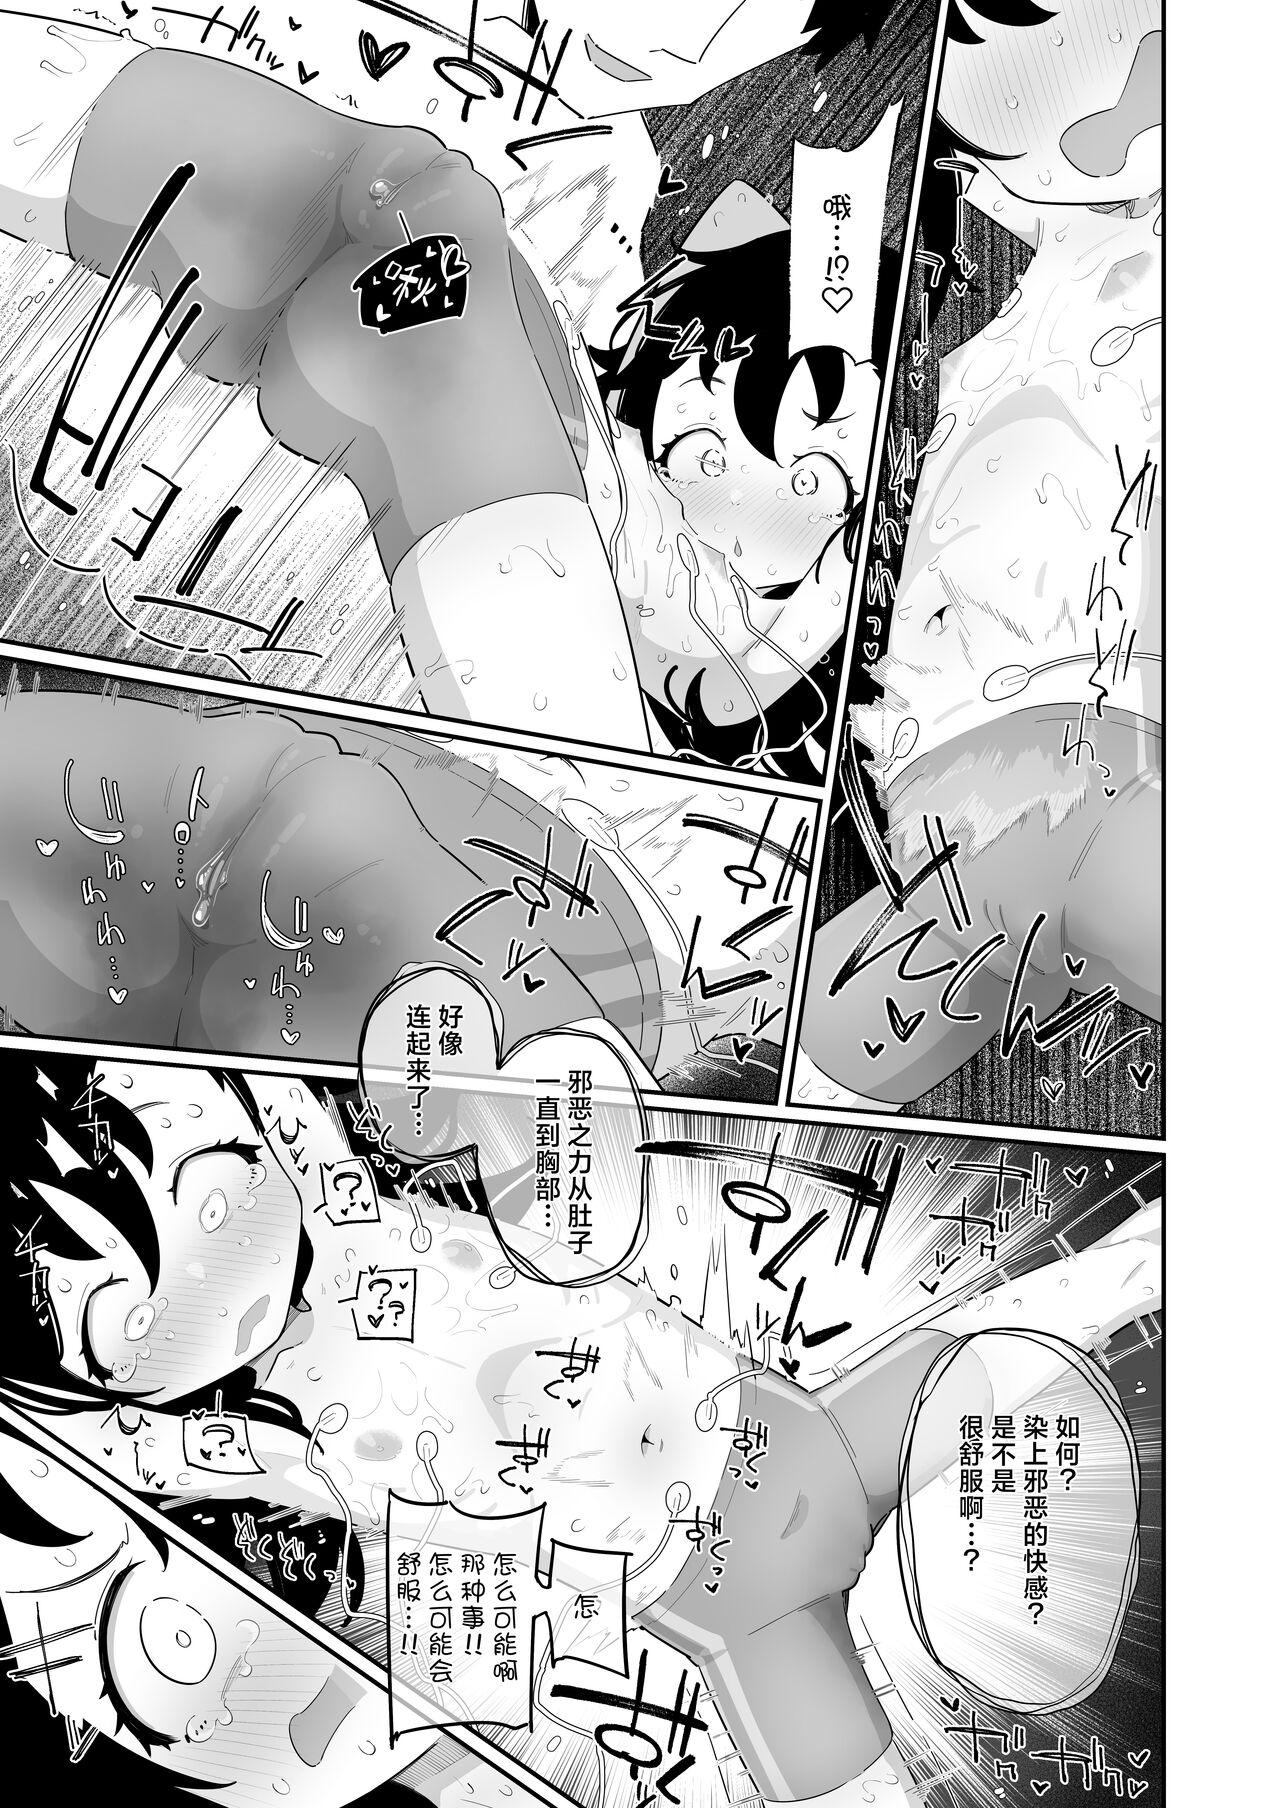 With Otou-san, Aka Kaiza ga Makesounano miruto Boku no Onaka ga Zokutte suruno, Doushite? - Original Bizarre - Page 9